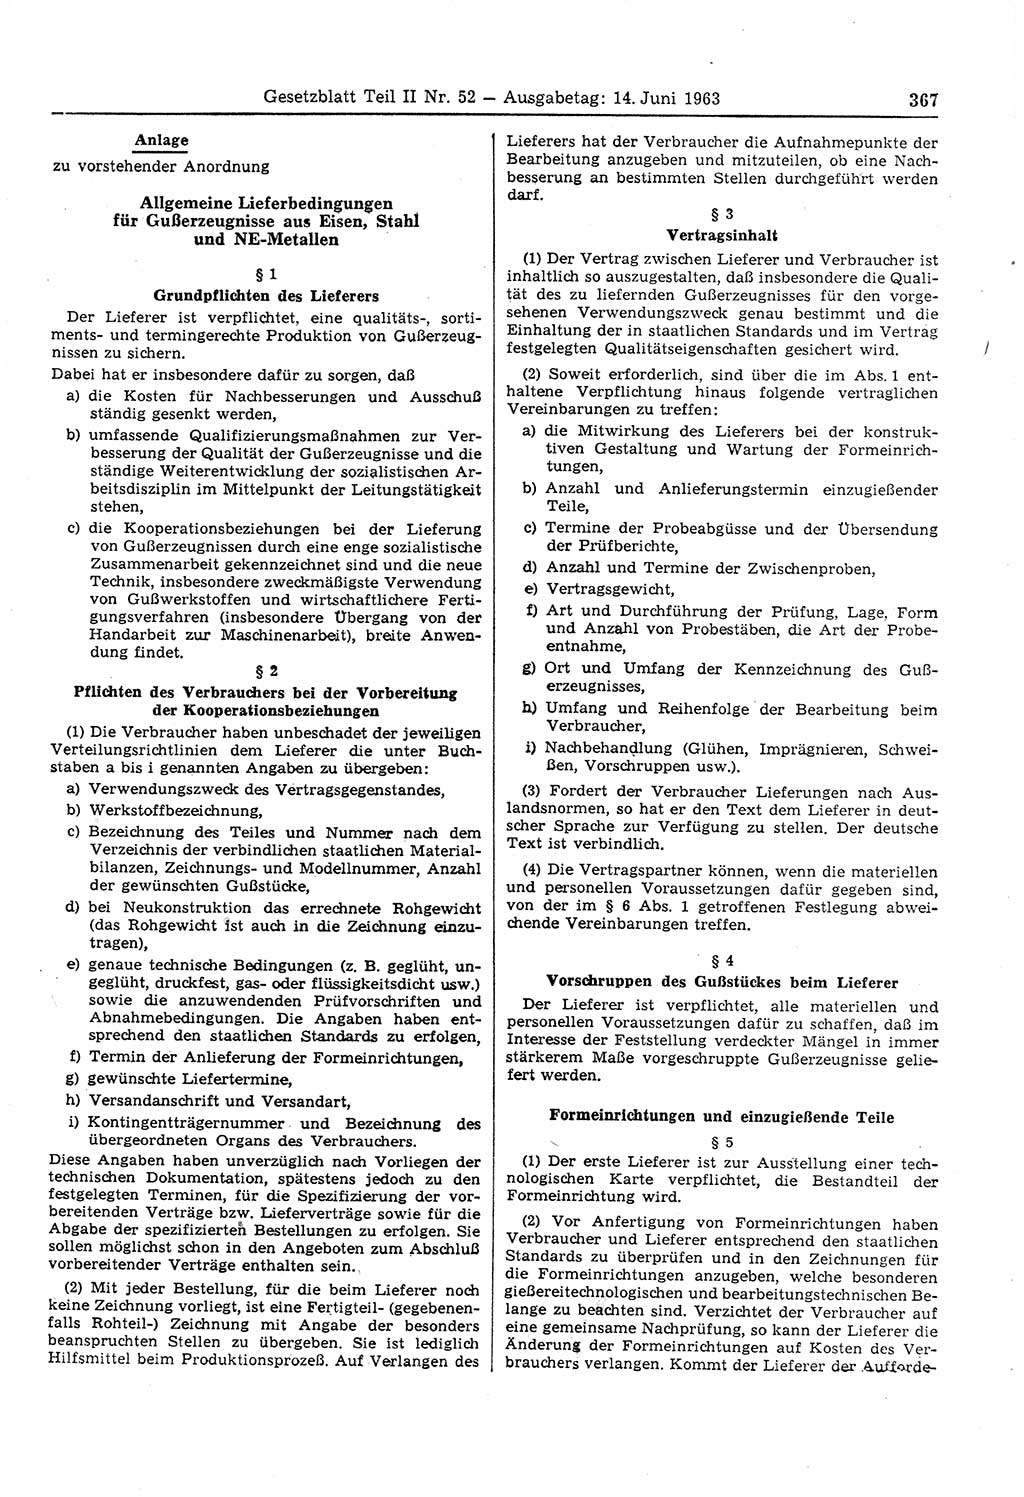 Gesetzblatt (GBl.) der Deutschen Demokratischen Republik (DDR) Teil ⅠⅠ 1963, Seite 367 (GBl. DDR ⅠⅠ 1963, S. 367)